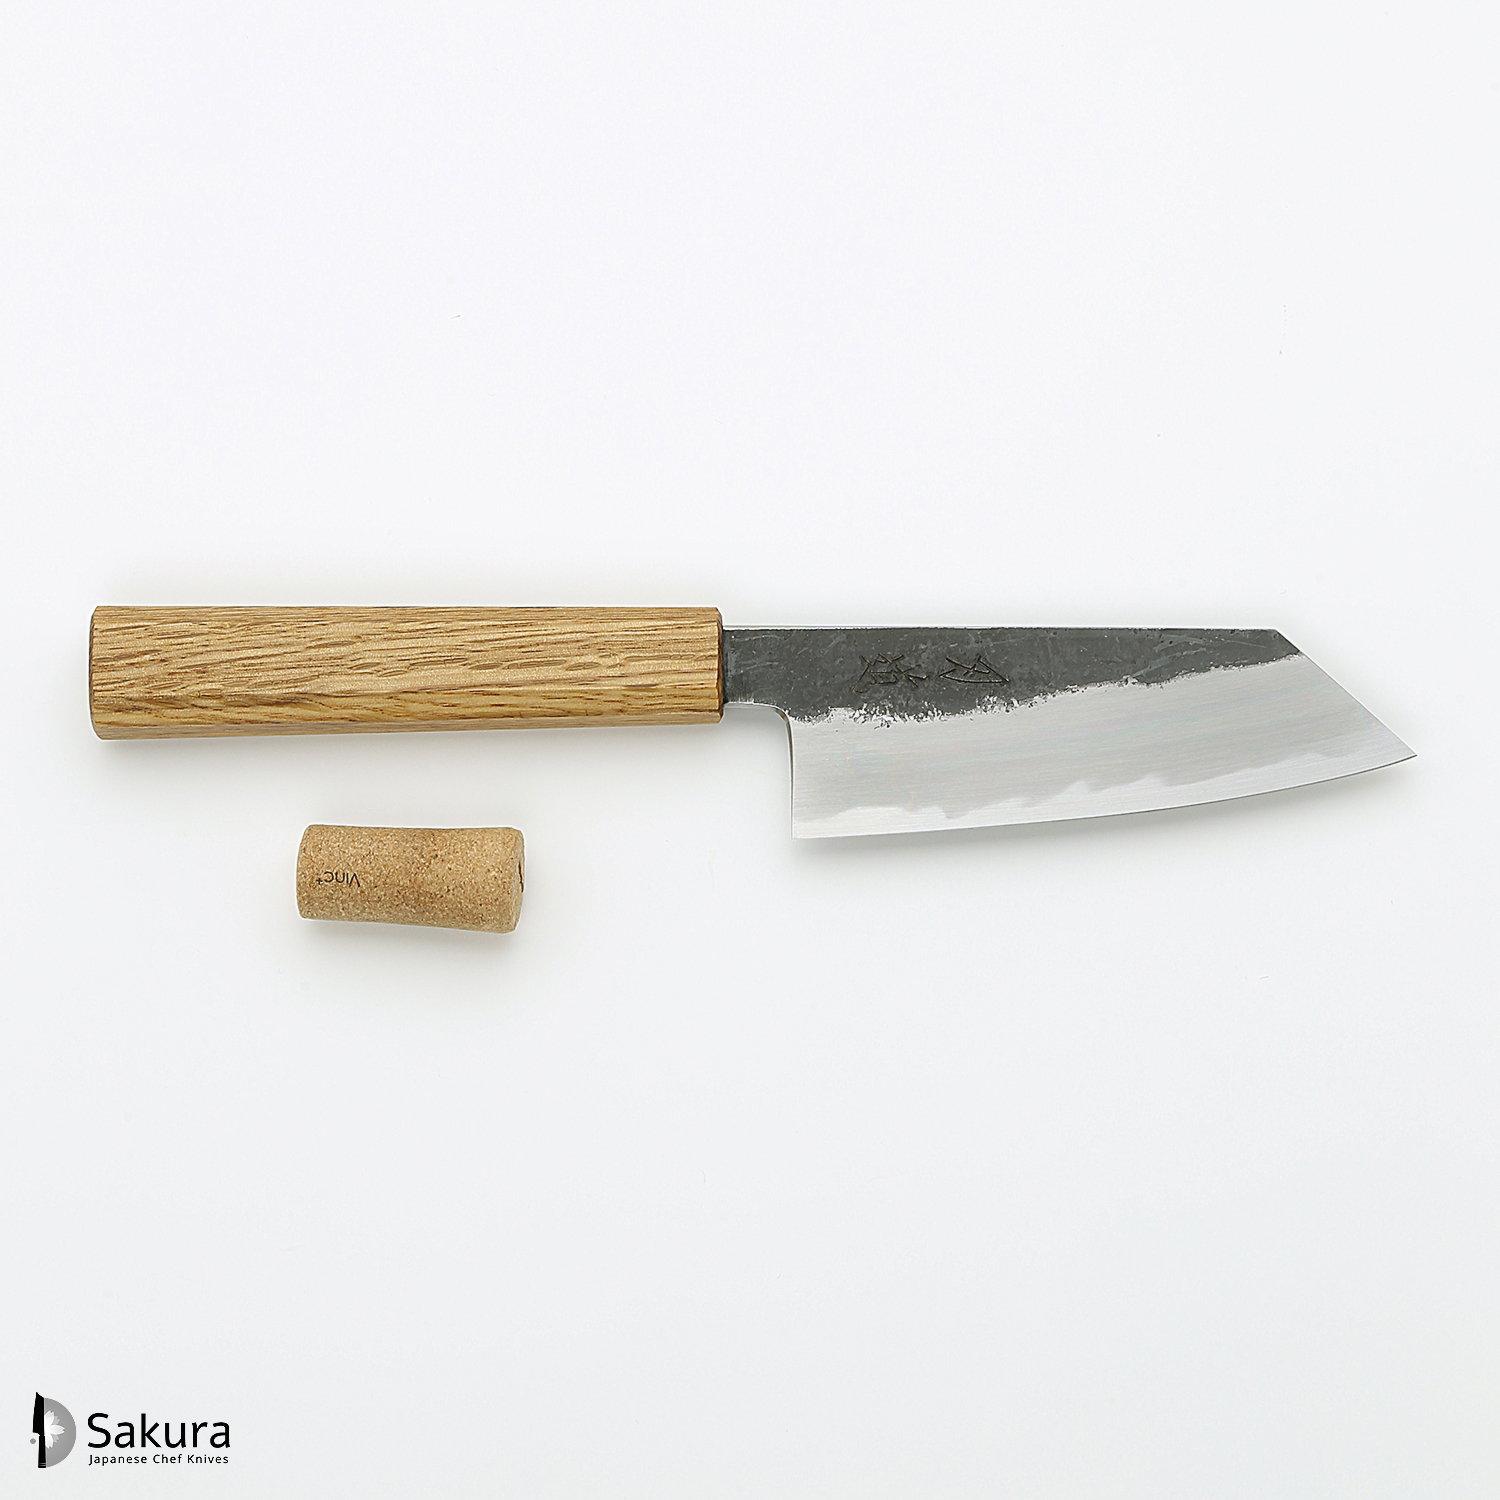 סכין עזר קטנה רב-תכליתית קוֹ-בּוּנְקָה 135מ״מ מחושלת בעבודת יד 3 שכבות: פלדת פחמן יפנית מתקדמת מסוג Shirogami #2 עטופה ברזל בגימור קורואיצ׳י שחור גימור קורואיצ׳י שחור האדו יפן